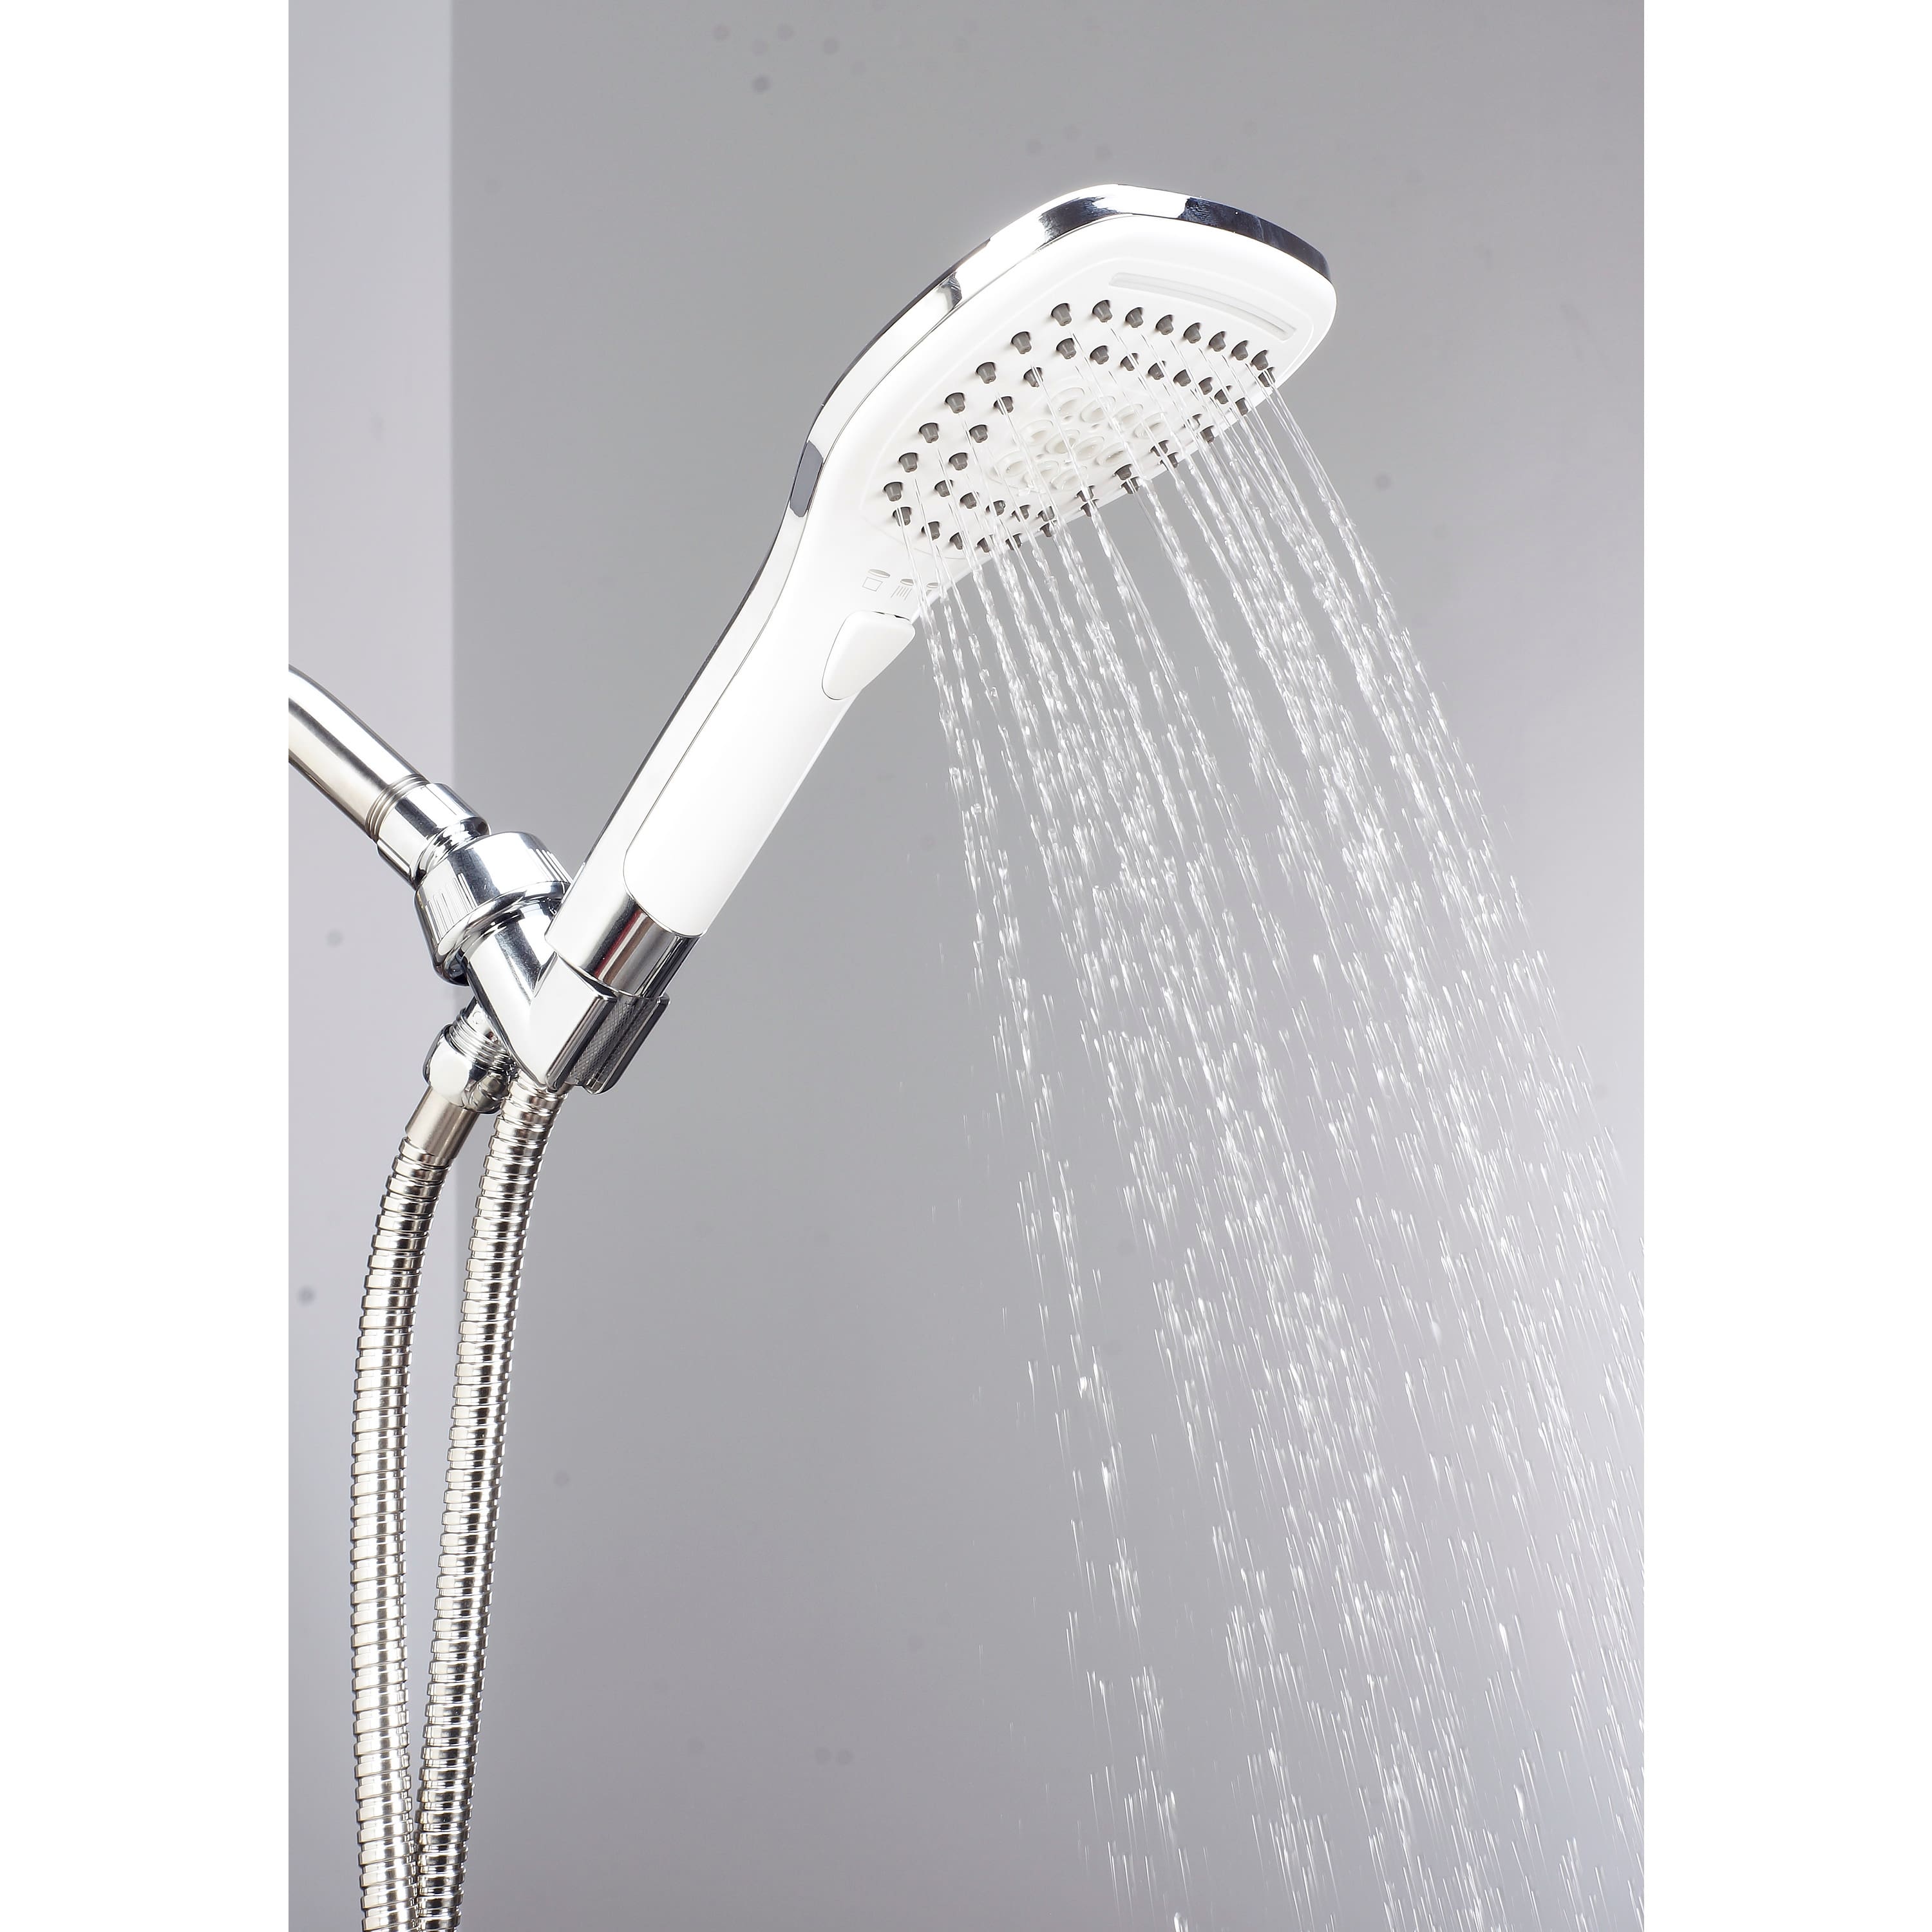 Bath Bliss Niagara 3 Function Shower Head &#x26; Cord Set